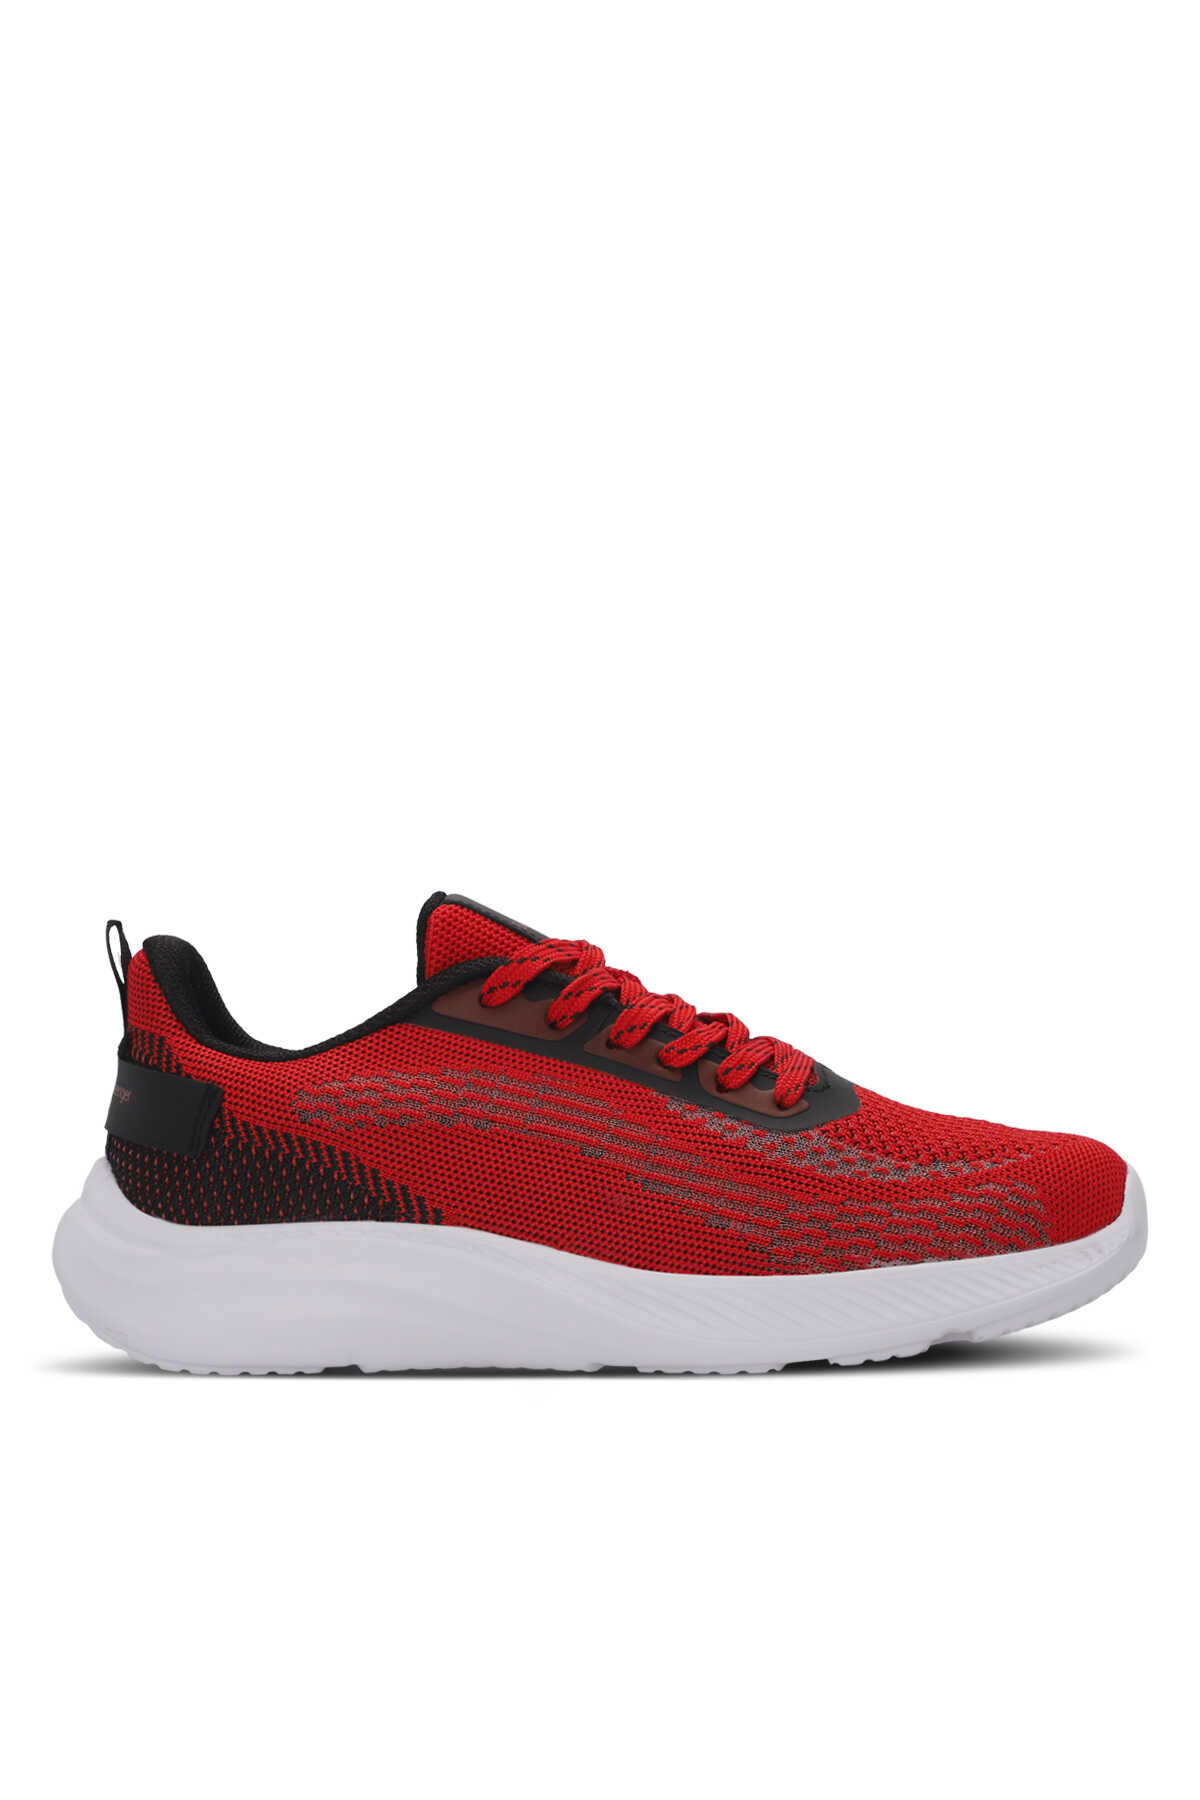 Slazenger - Slazenger ANDORA INT Erkek Sneaker Ayakkabı Kırmızı